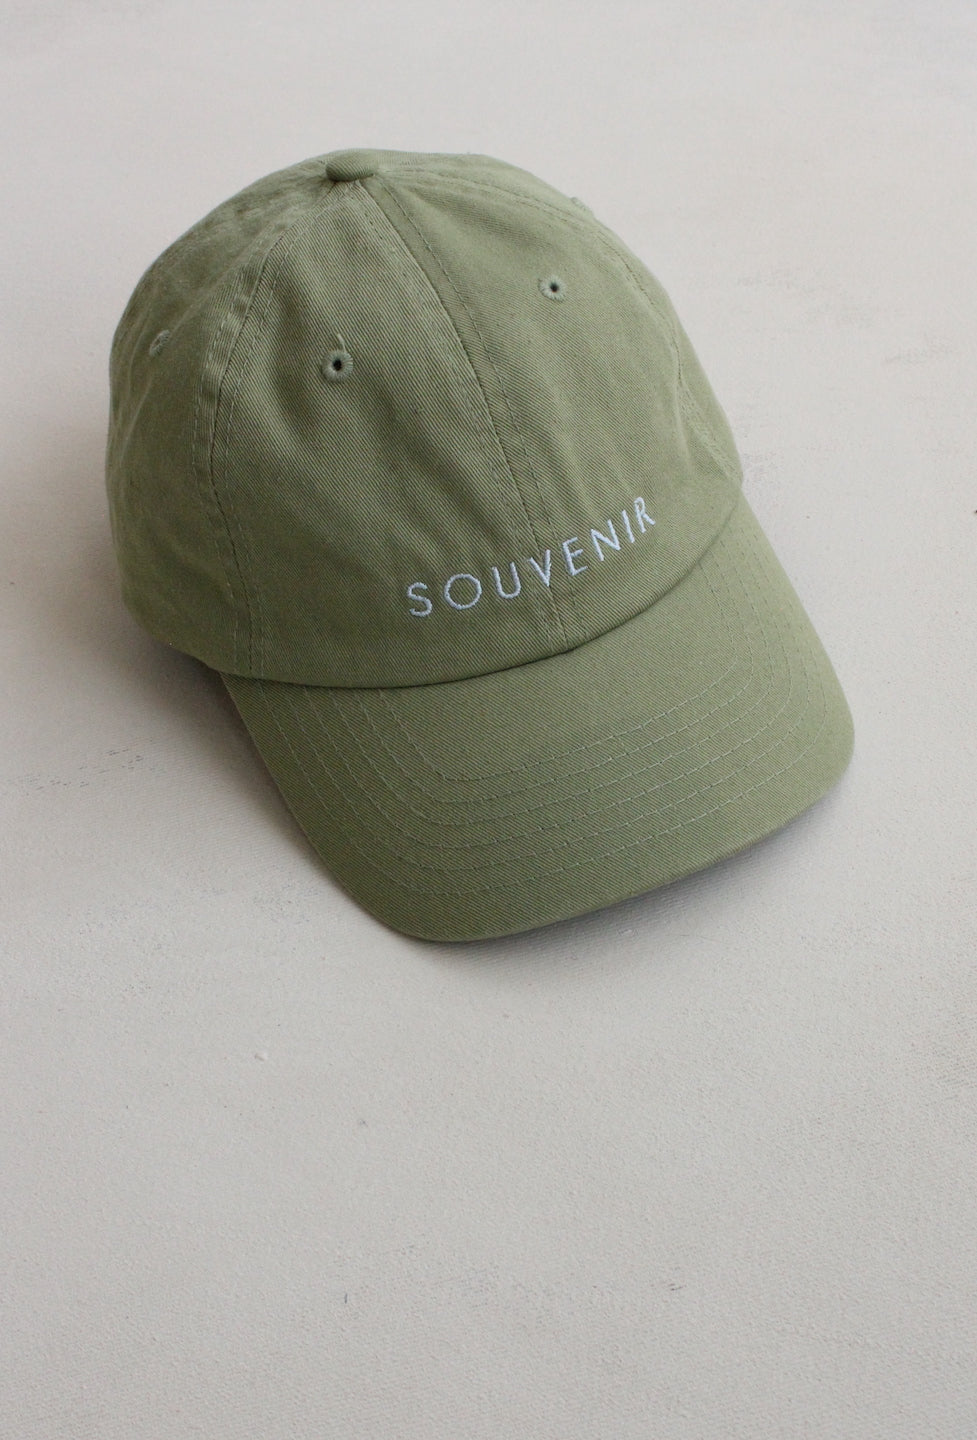 SOUVENIR Ball Cap